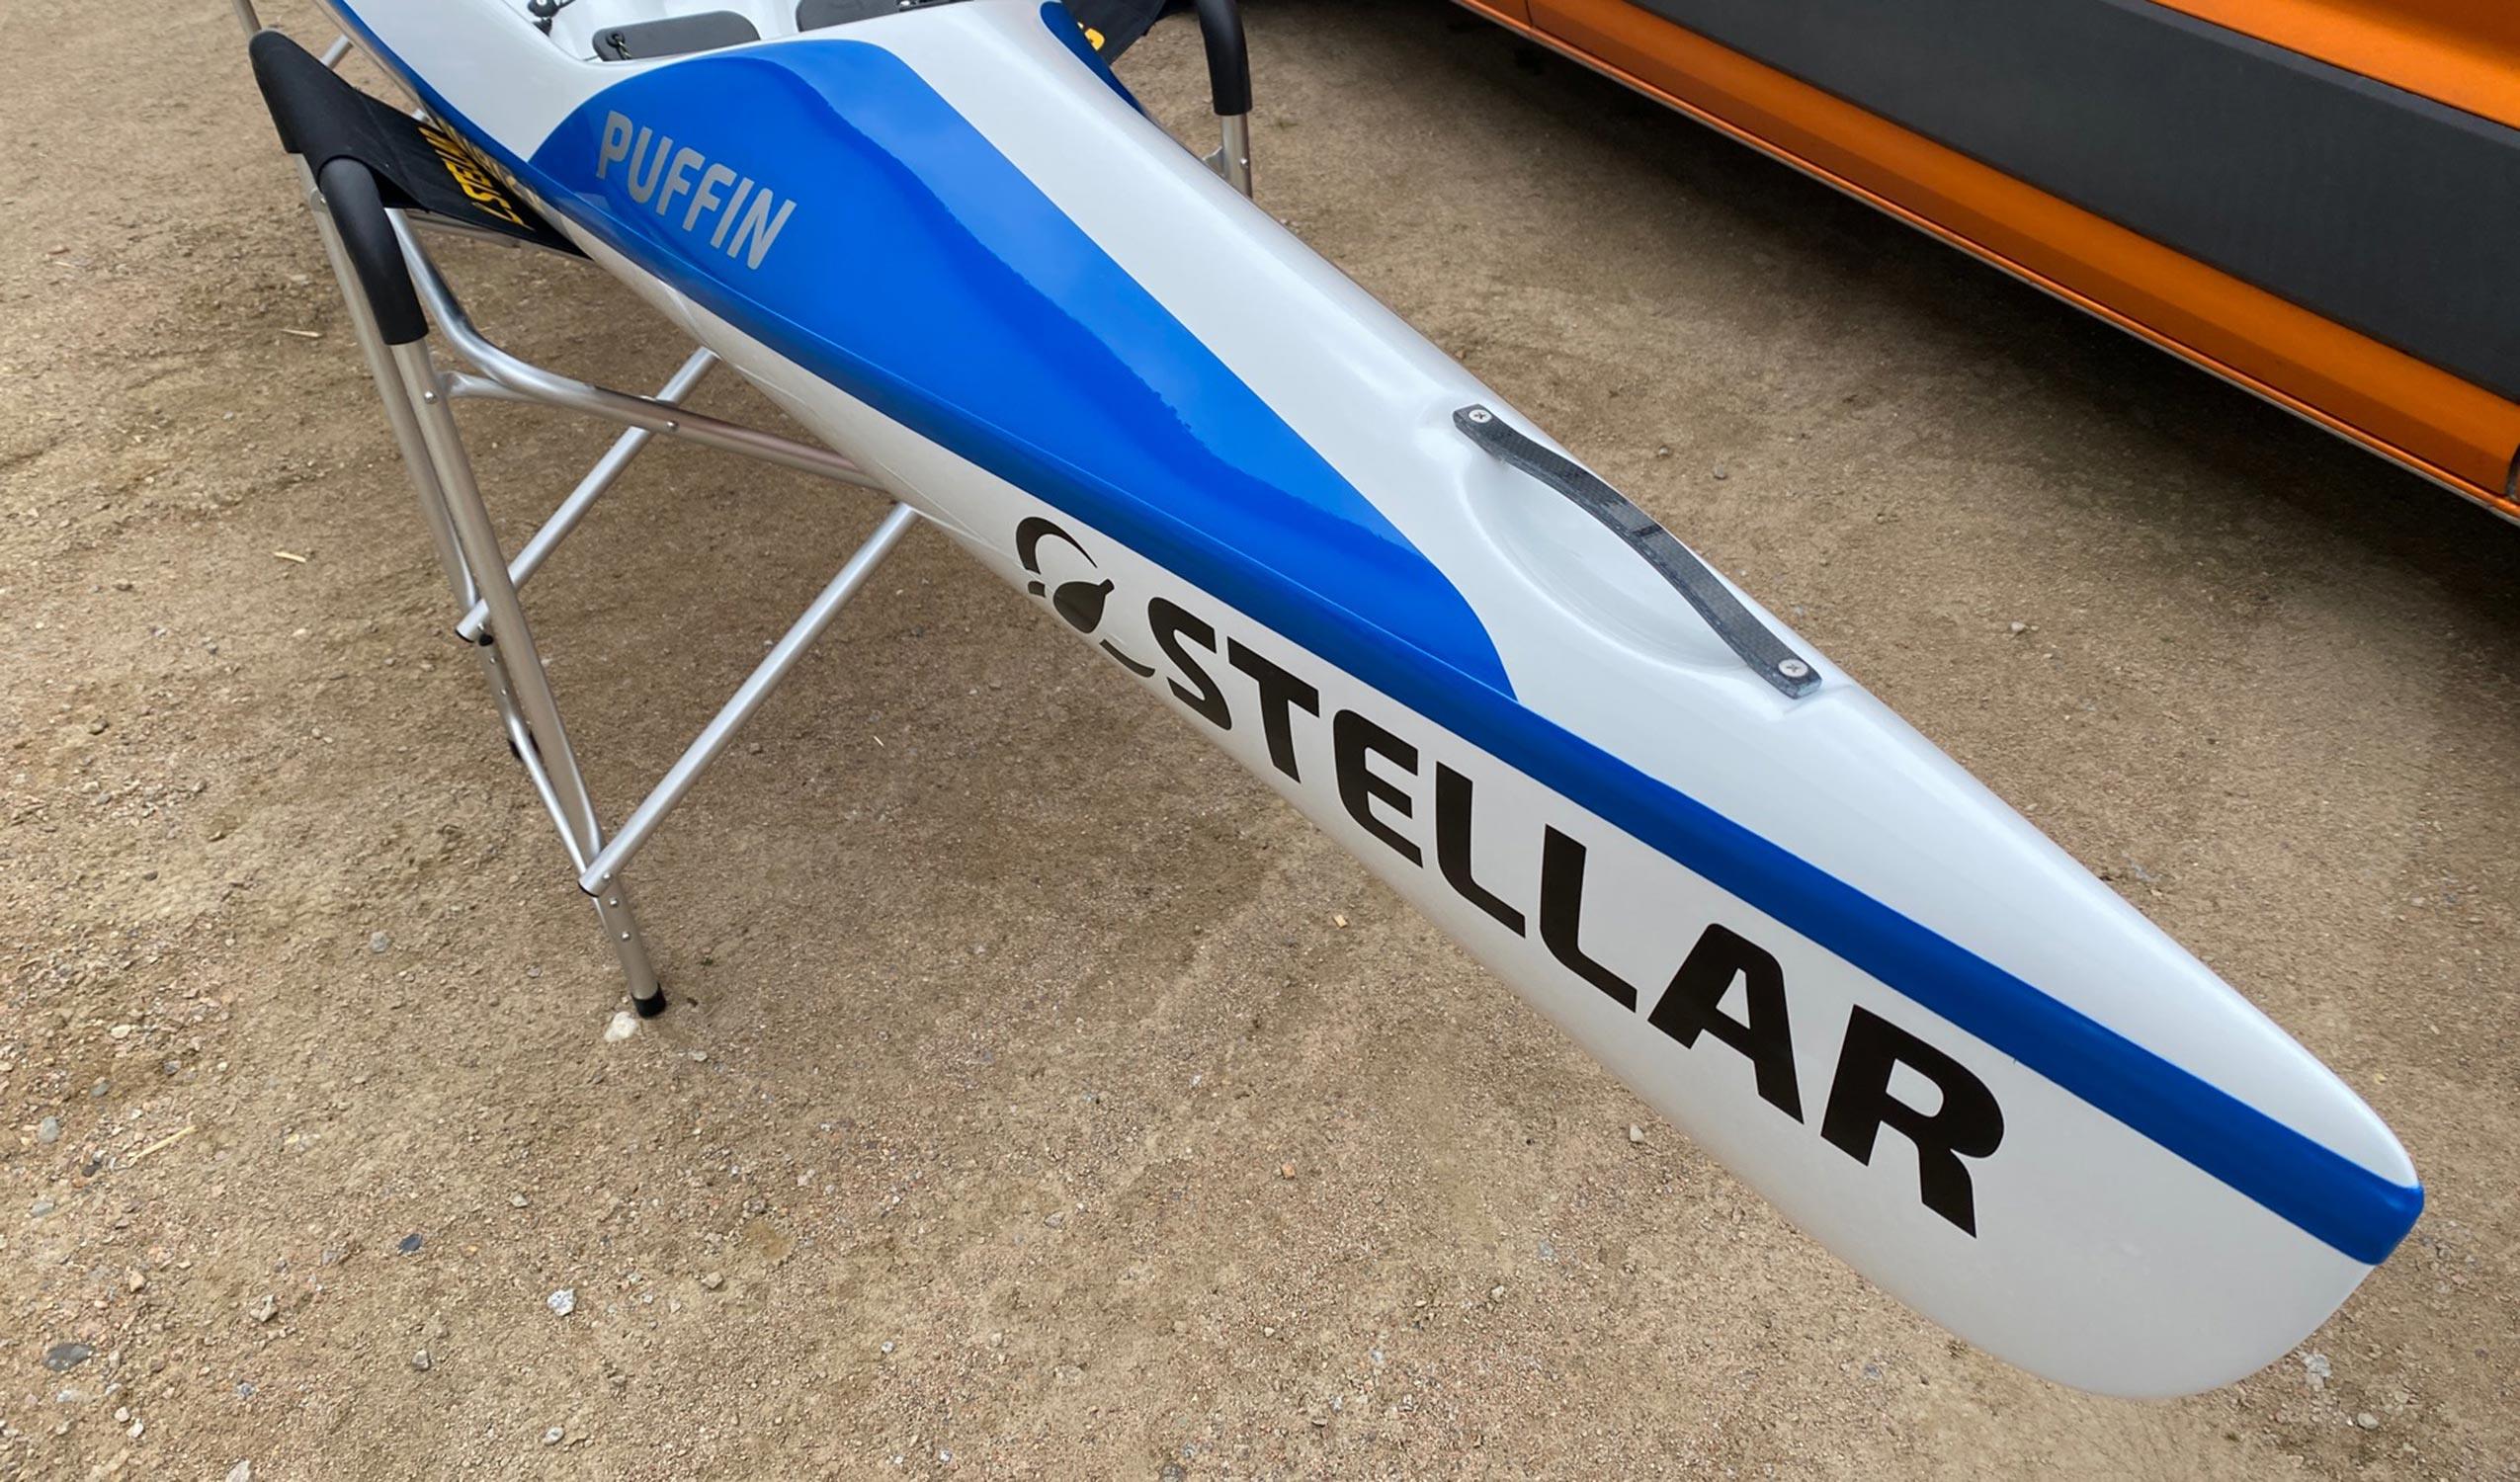 Produktbild von Kajak " S14S G2 Advantage-blau weiß " der Marke STELLAR Lightweight für 2690.00 €. Erhältlich online bei Lite Venture ( www.liteventure.de )